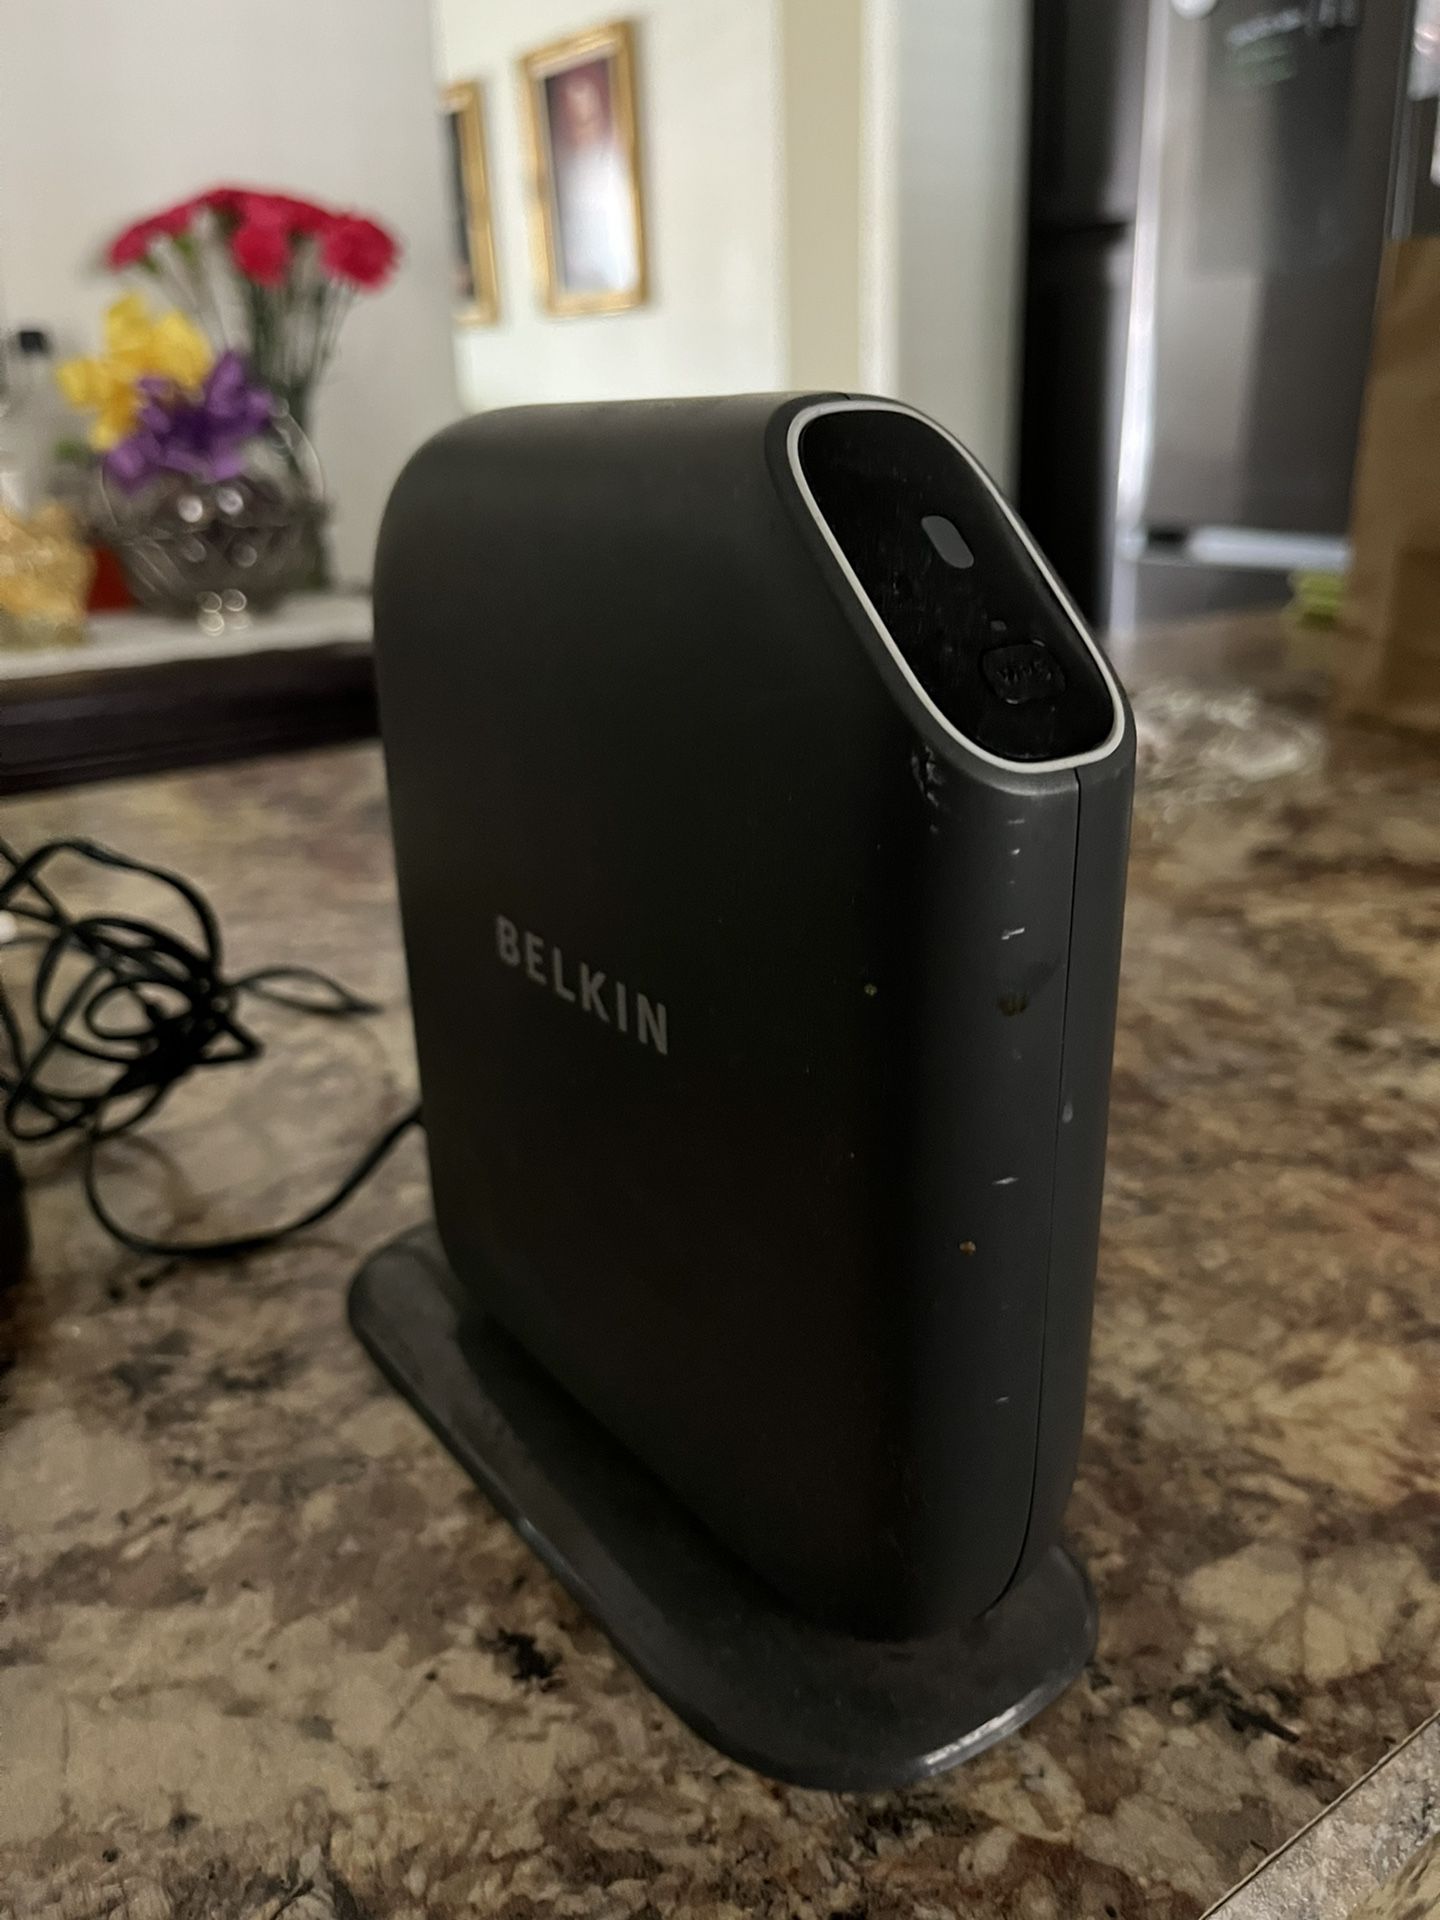 Belkin Wi-Fi Router